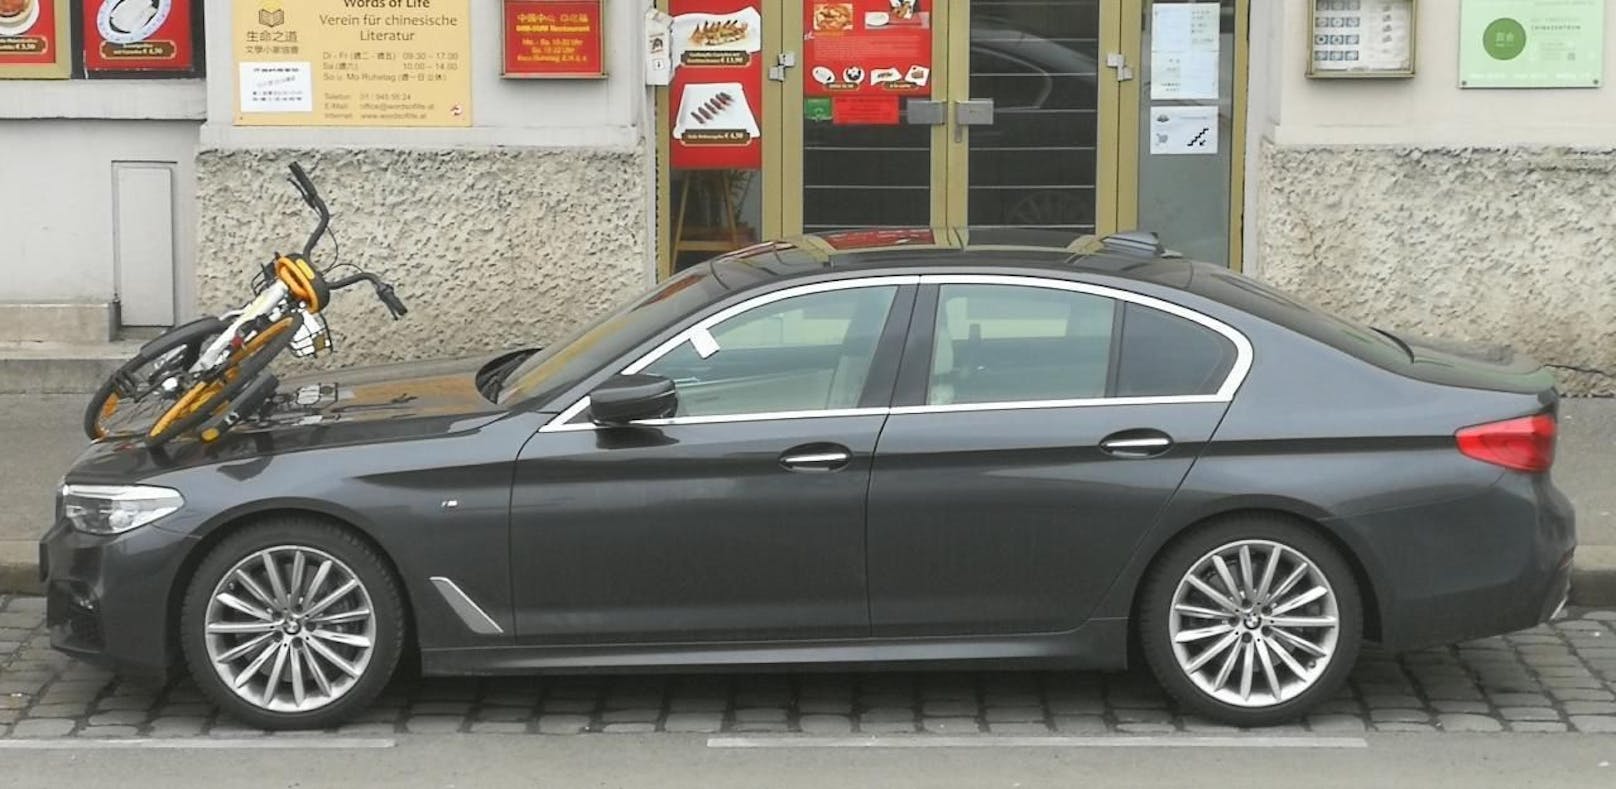 Suboptimal geparkt: Ein oBike auf der Motorhaube eines BMWs